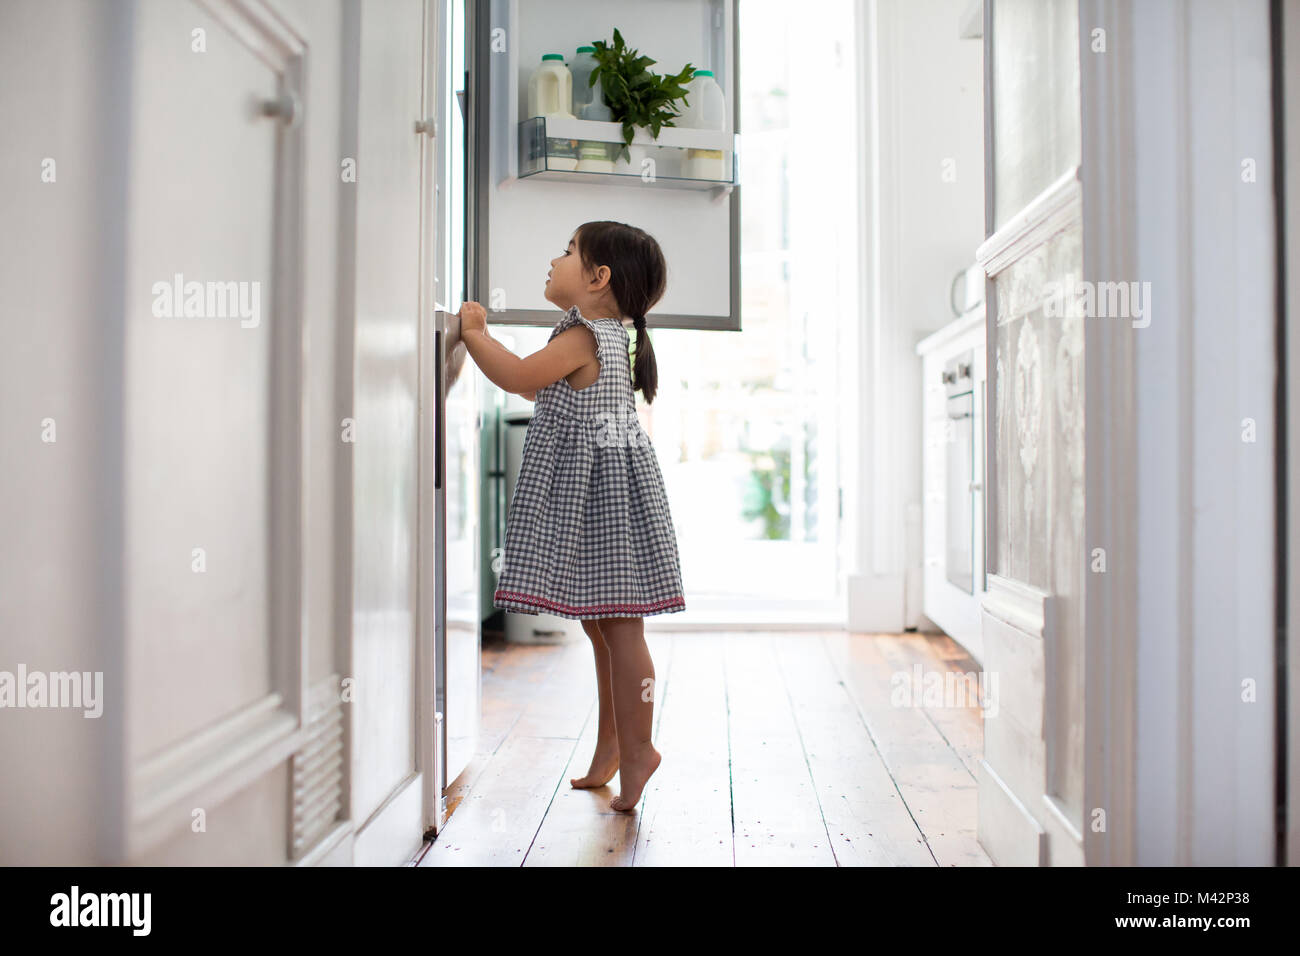 Girl sur pointe des pieds pour regarder dans réfrigérateur Banque D'Images